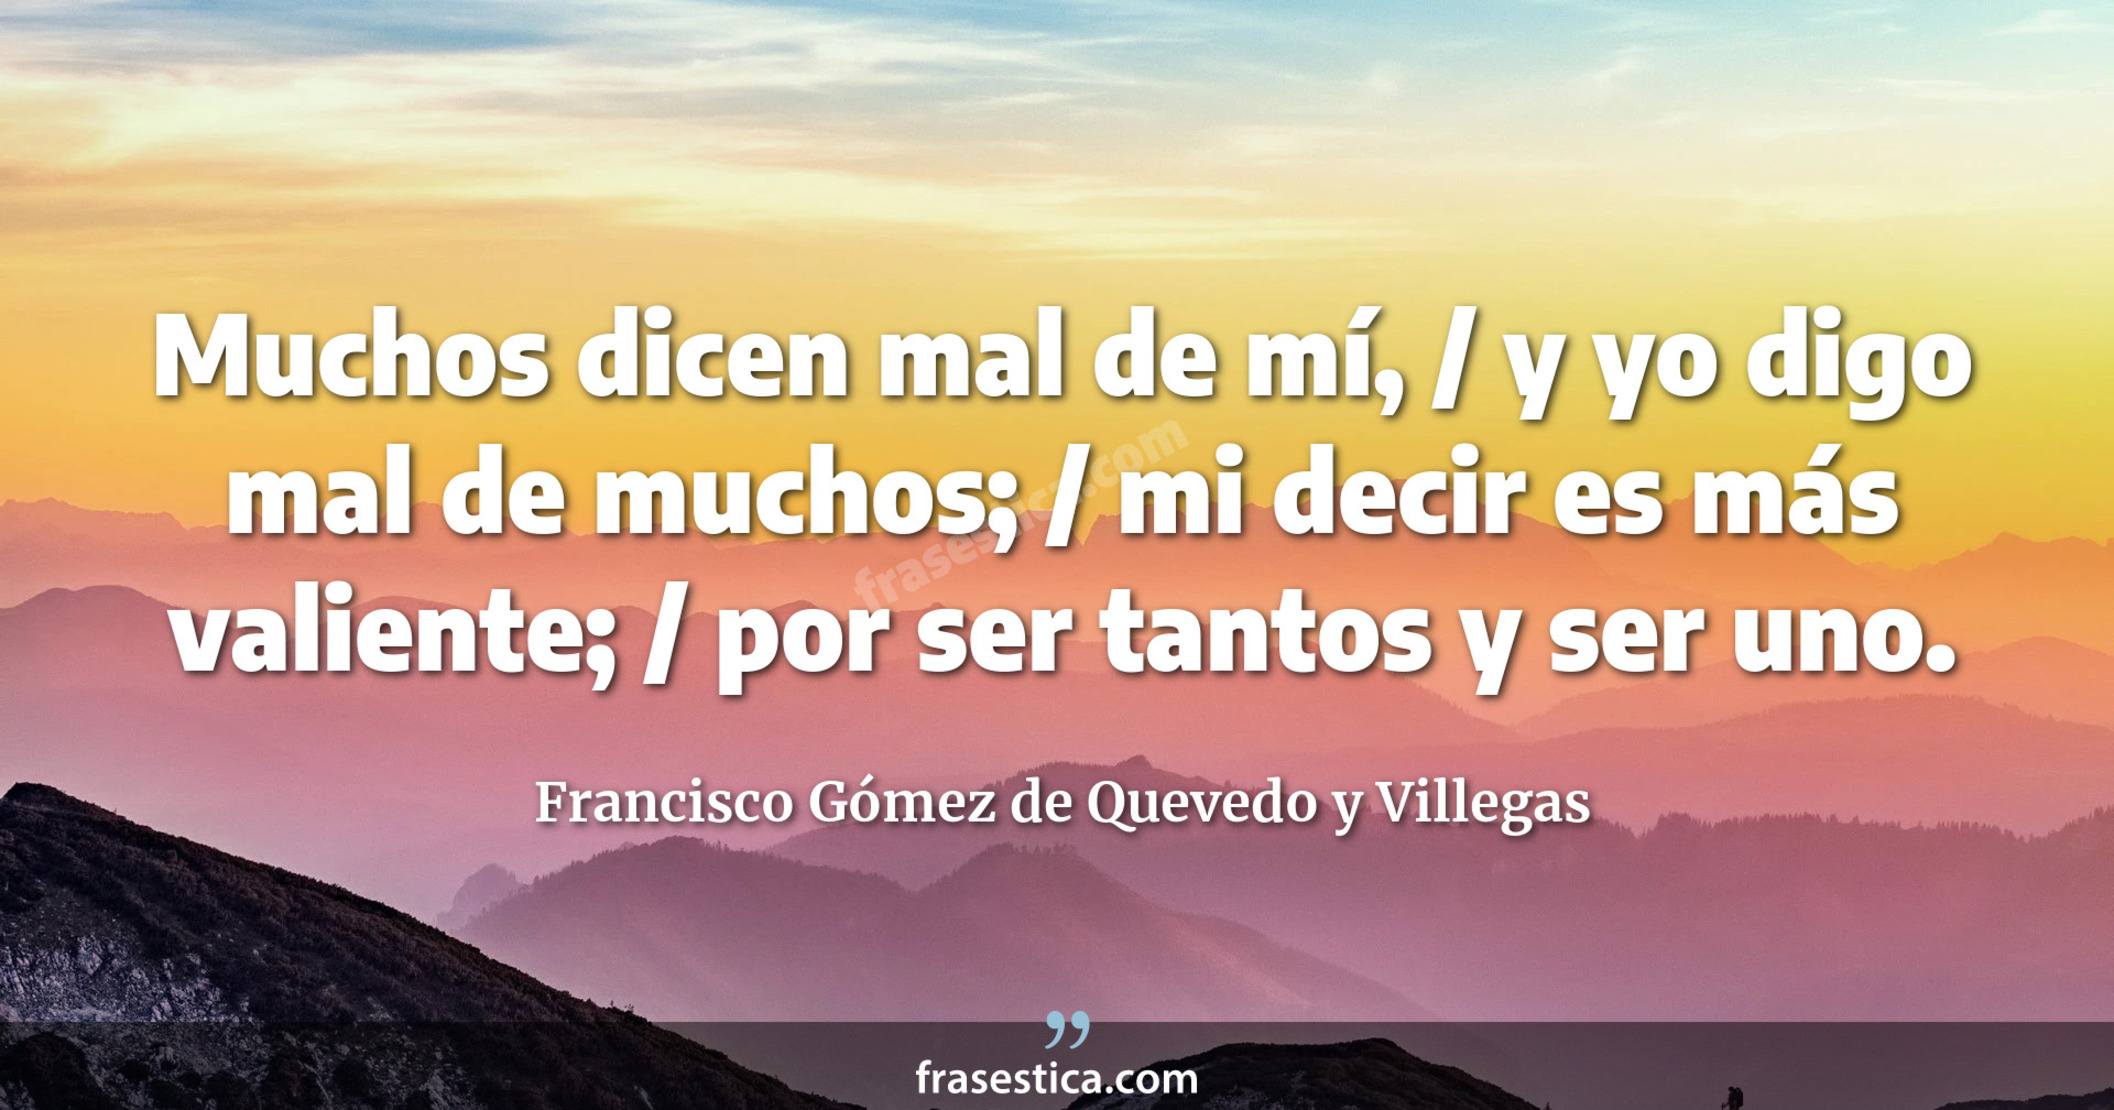 Muchos dicen mal de mí, / y yo digo mal de muchos; / mi decir es más valiente; / por ser tantos y ser uno. - Francisco Gómez de Quevedo y Villegas